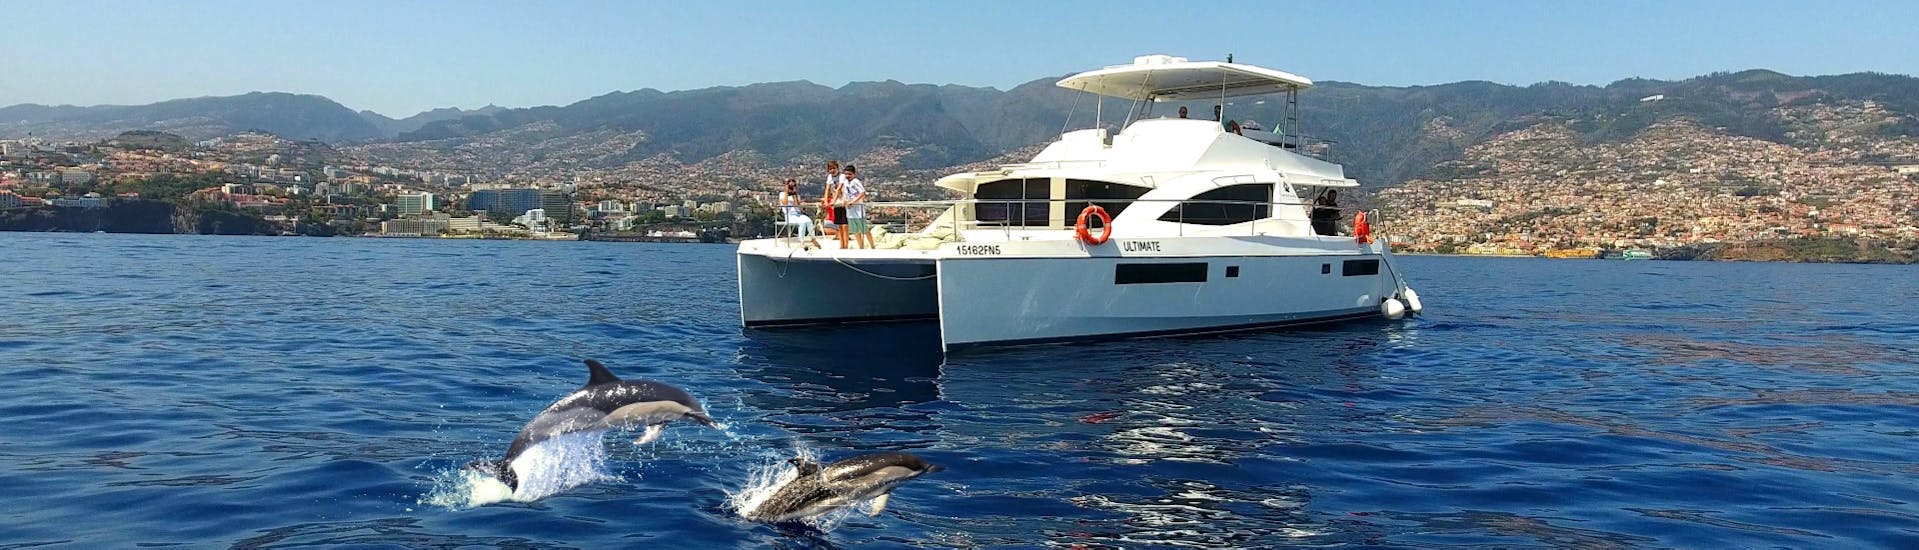 Gita privata in catamarano da Funchal con bagno in mare e osservazione della fauna selvatica.